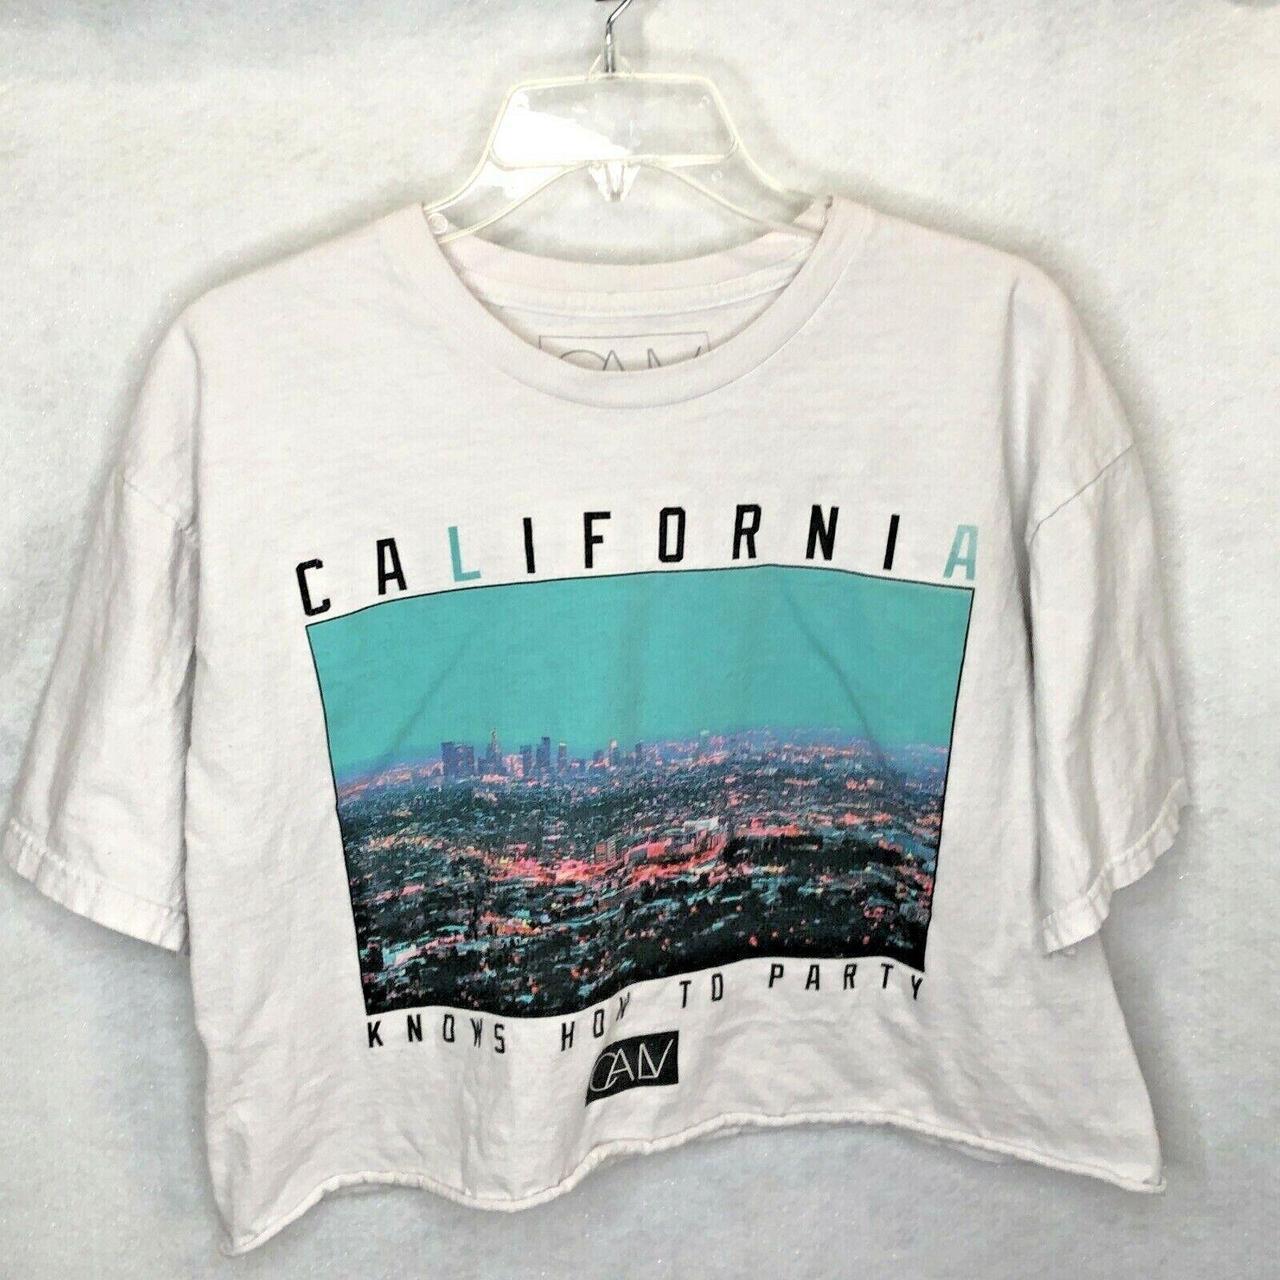 California Looks Men's White T-shirt